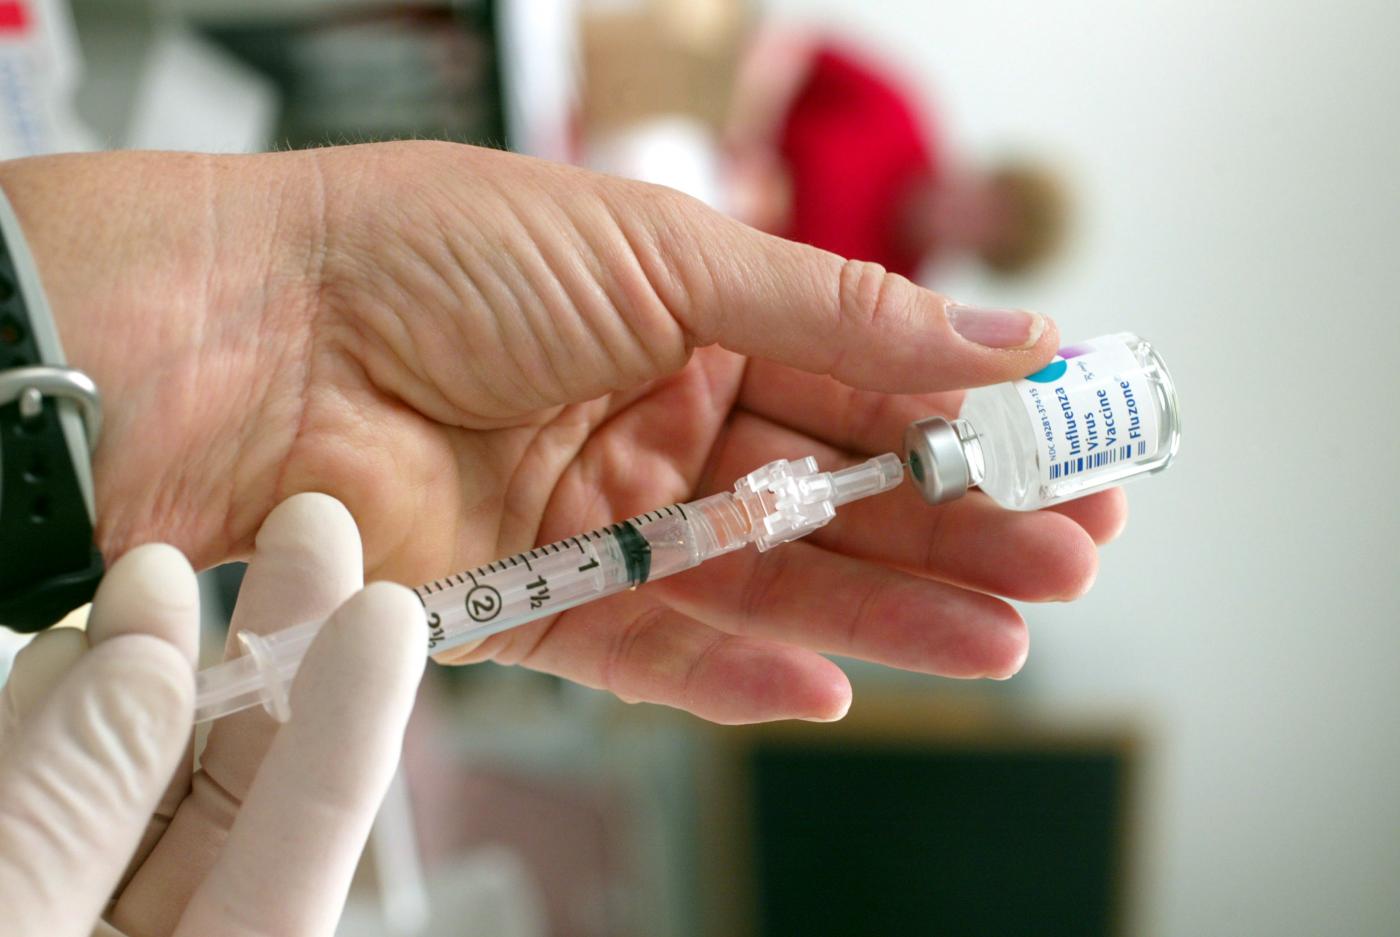 Vaccini, la posizione del M5S dopo la strigliata del professore: ‘Basta falsità o non vi aiuto’